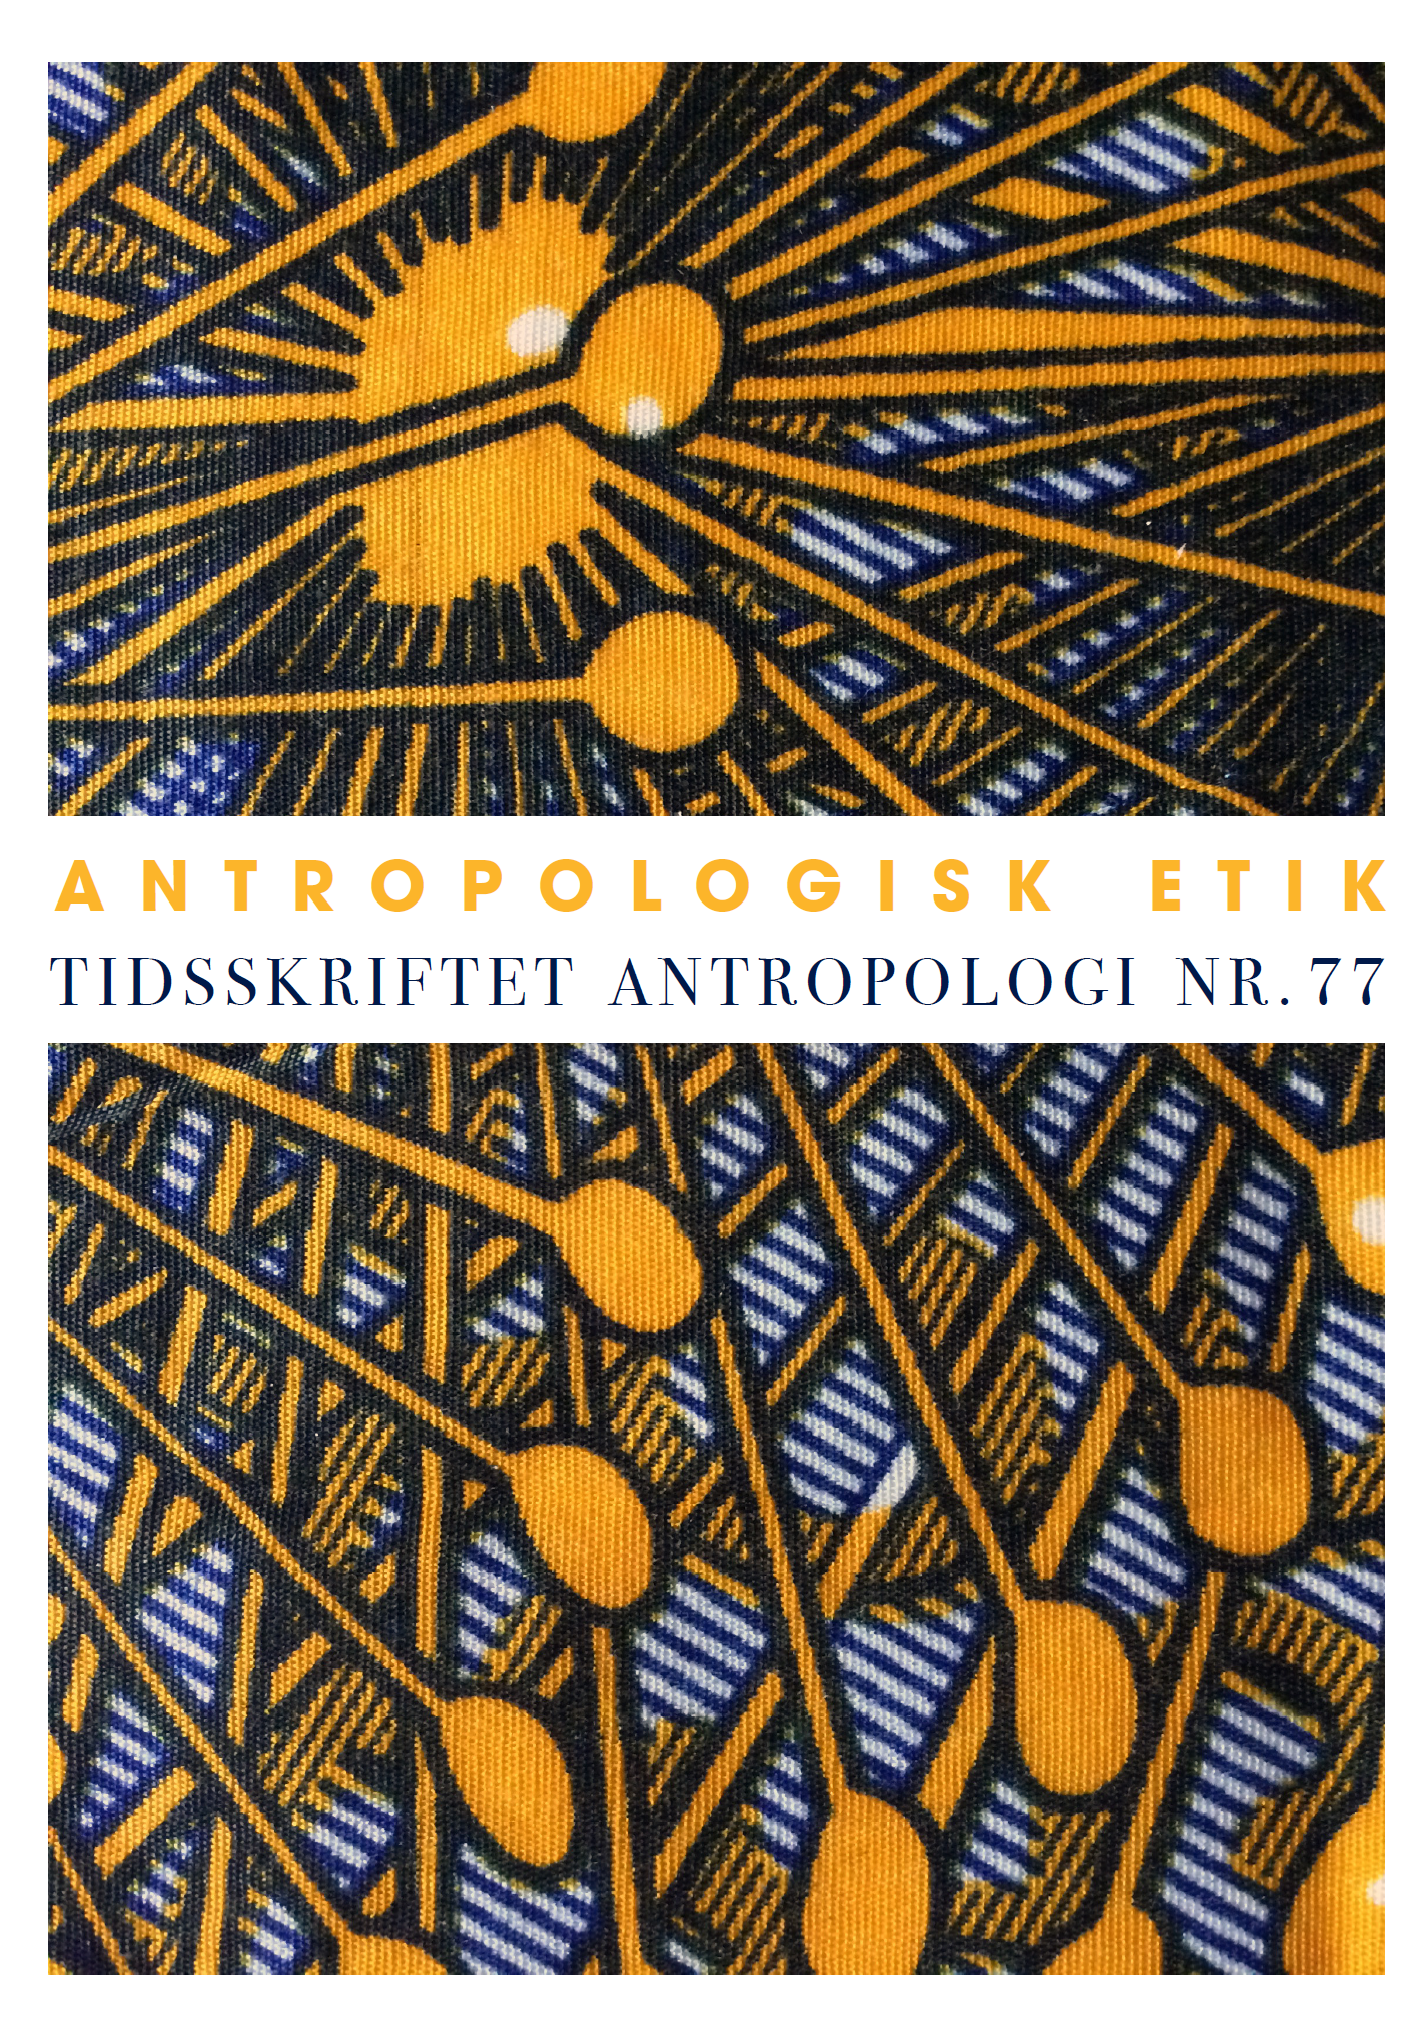 Lancering af Tidsskriftet Antropologi – Temanummer om Antropologisk Etik